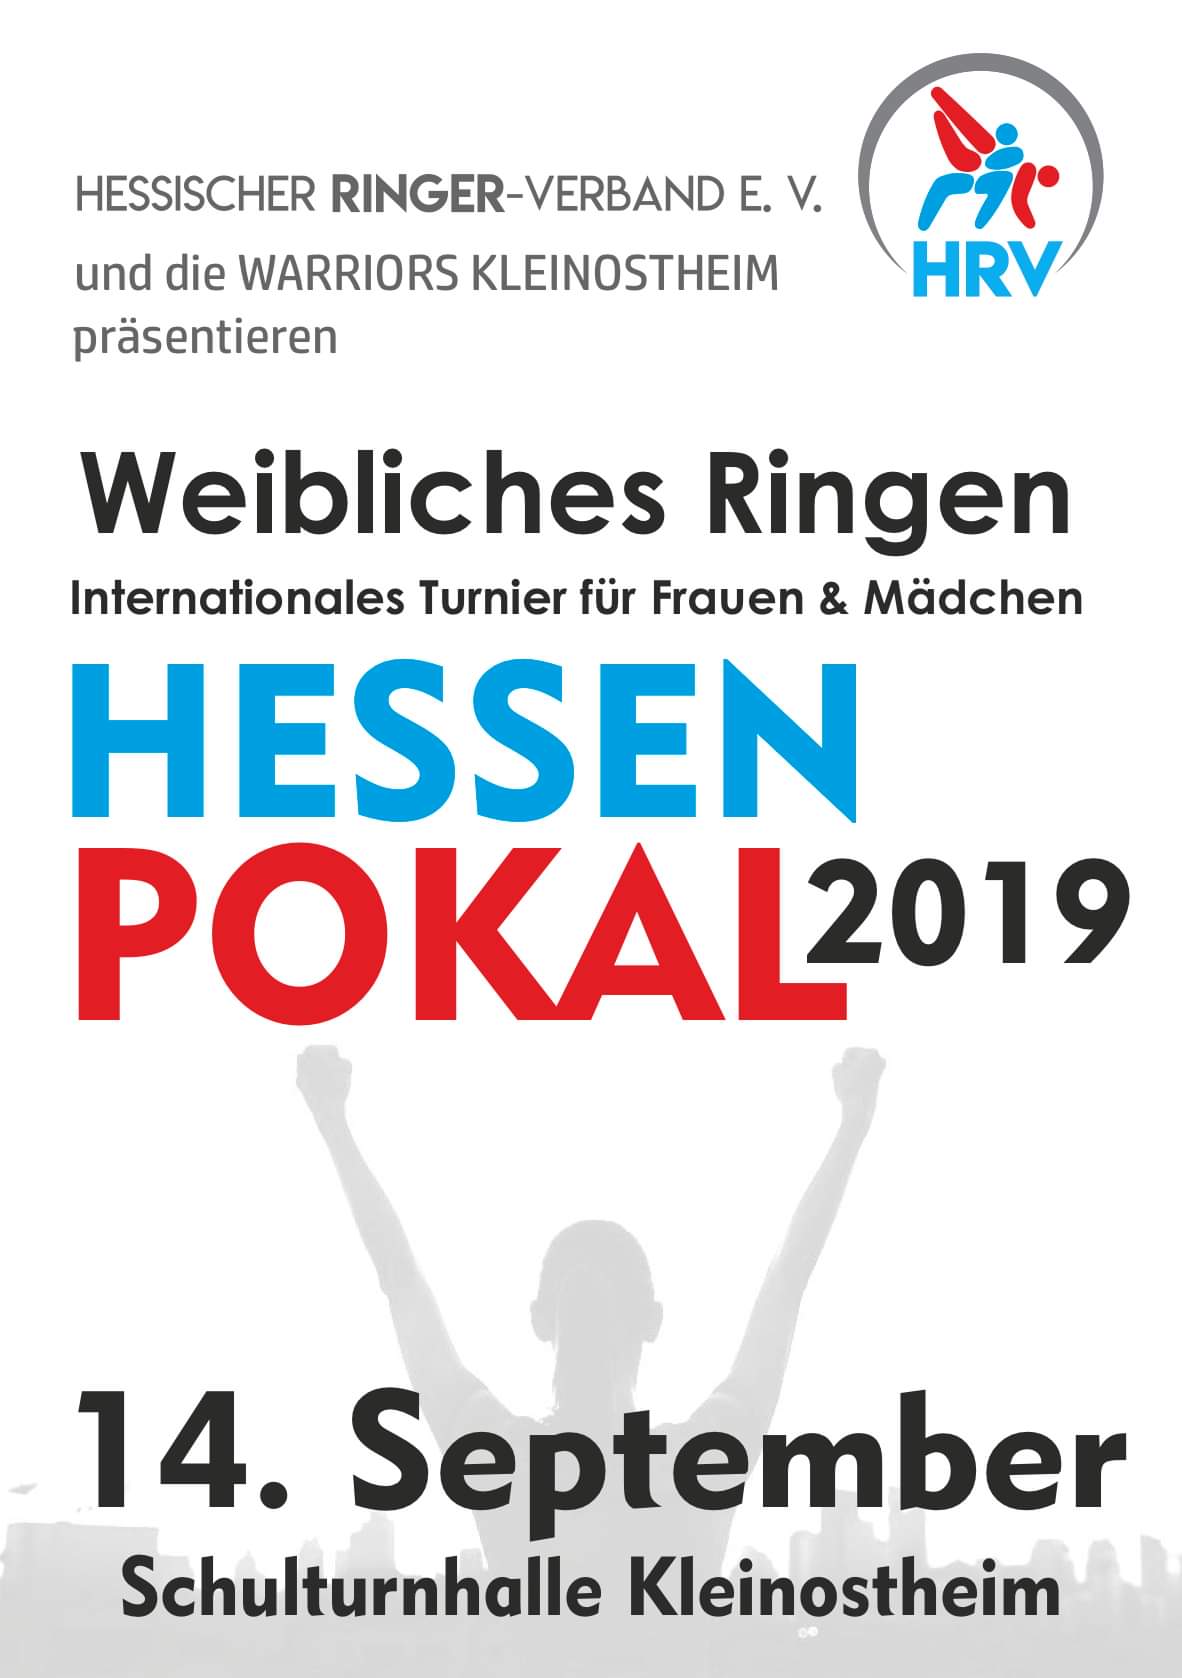 Hessenpokal 2019